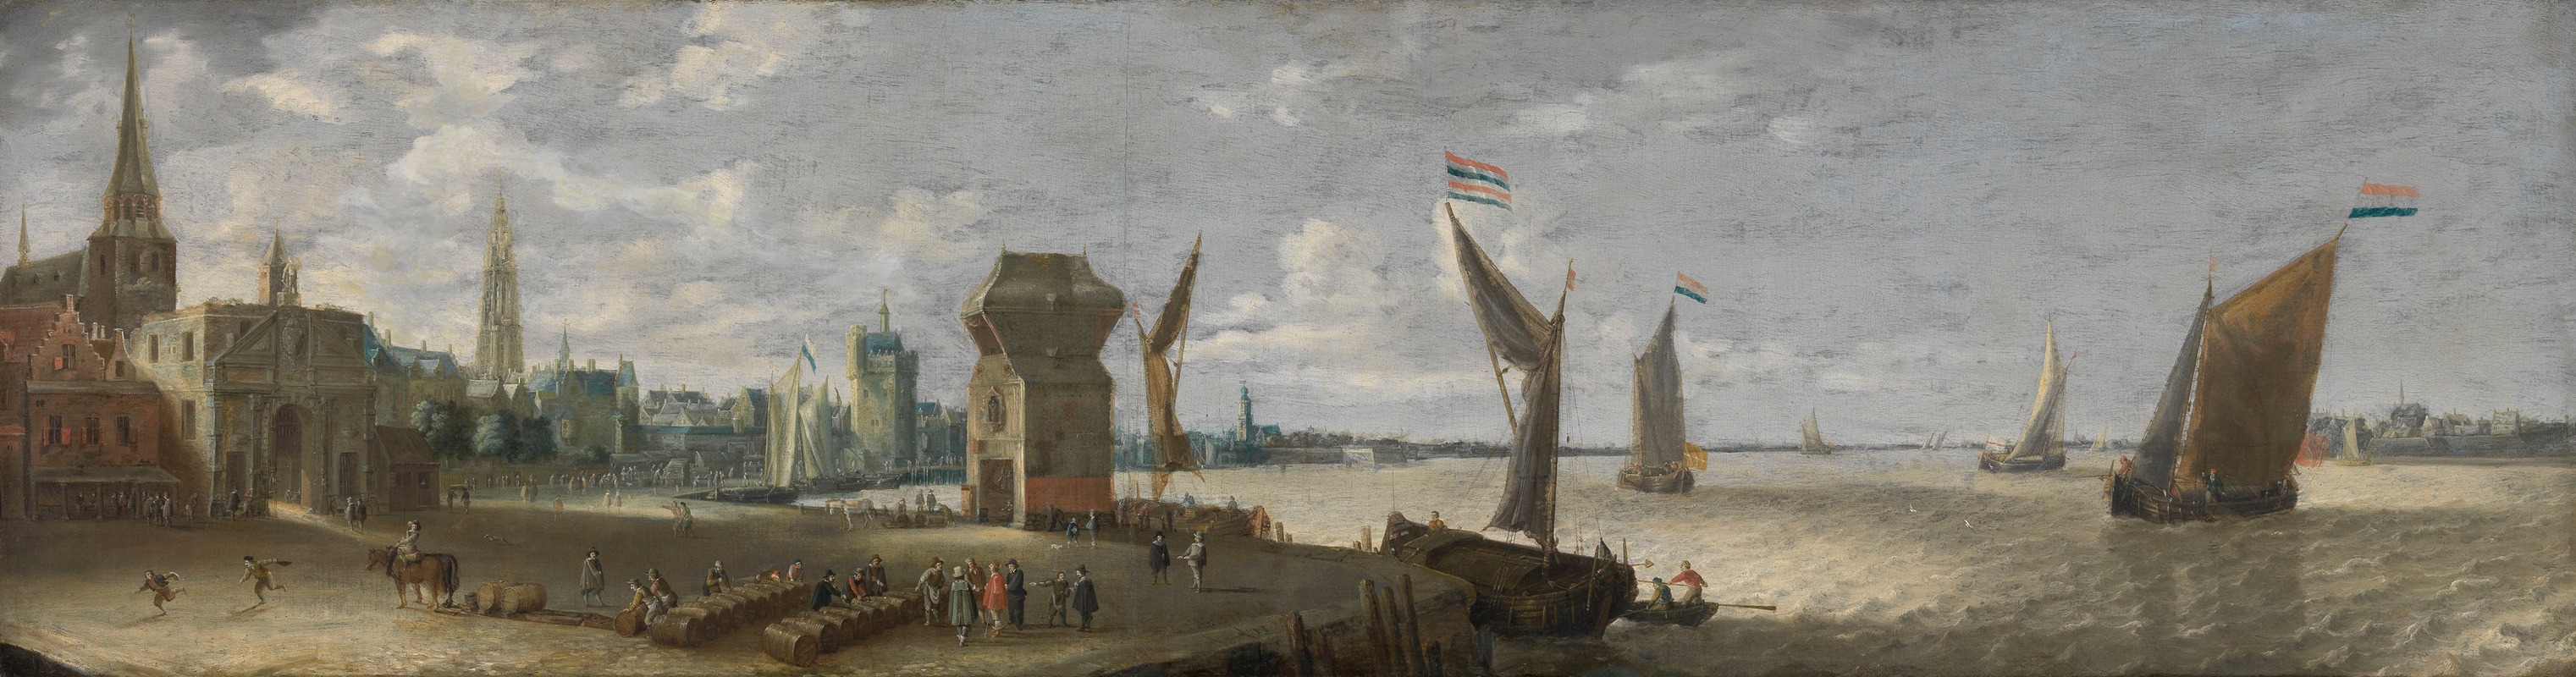 Bonaventura Peeters the Elder - The Antwerp Shipyard